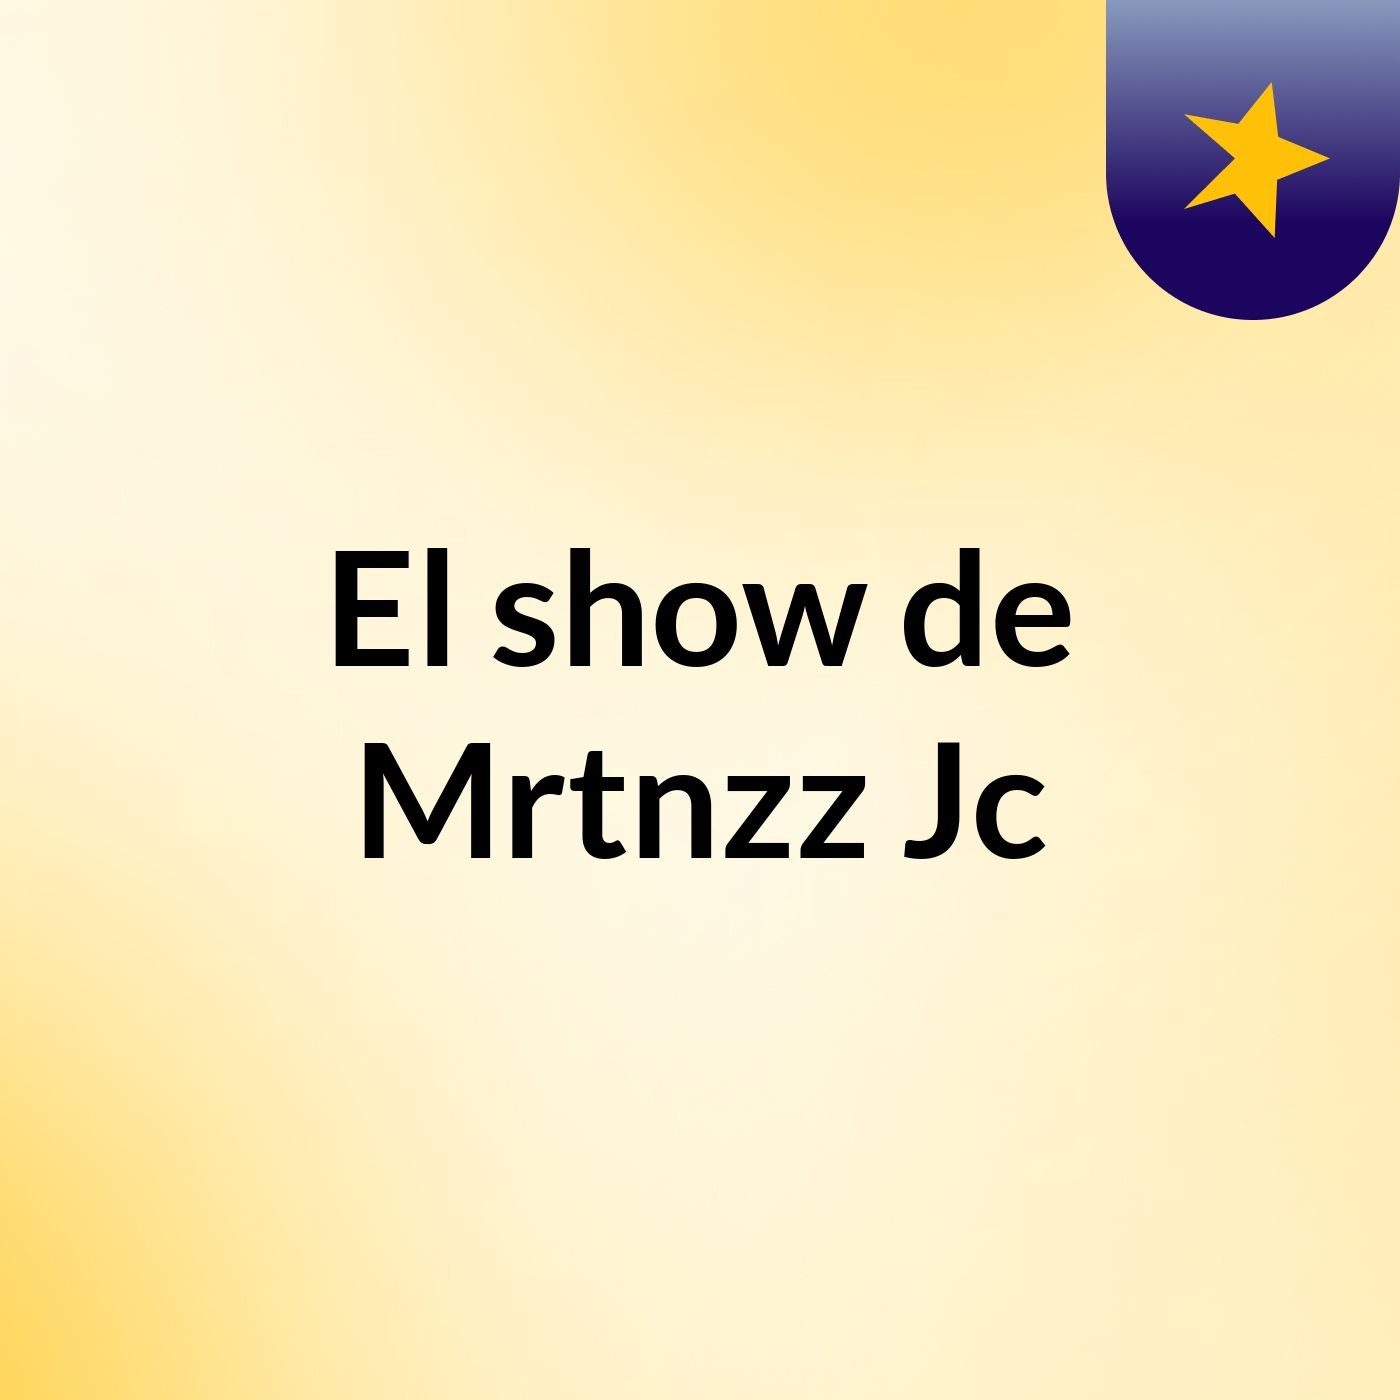 El show de Mrtnzz Jc